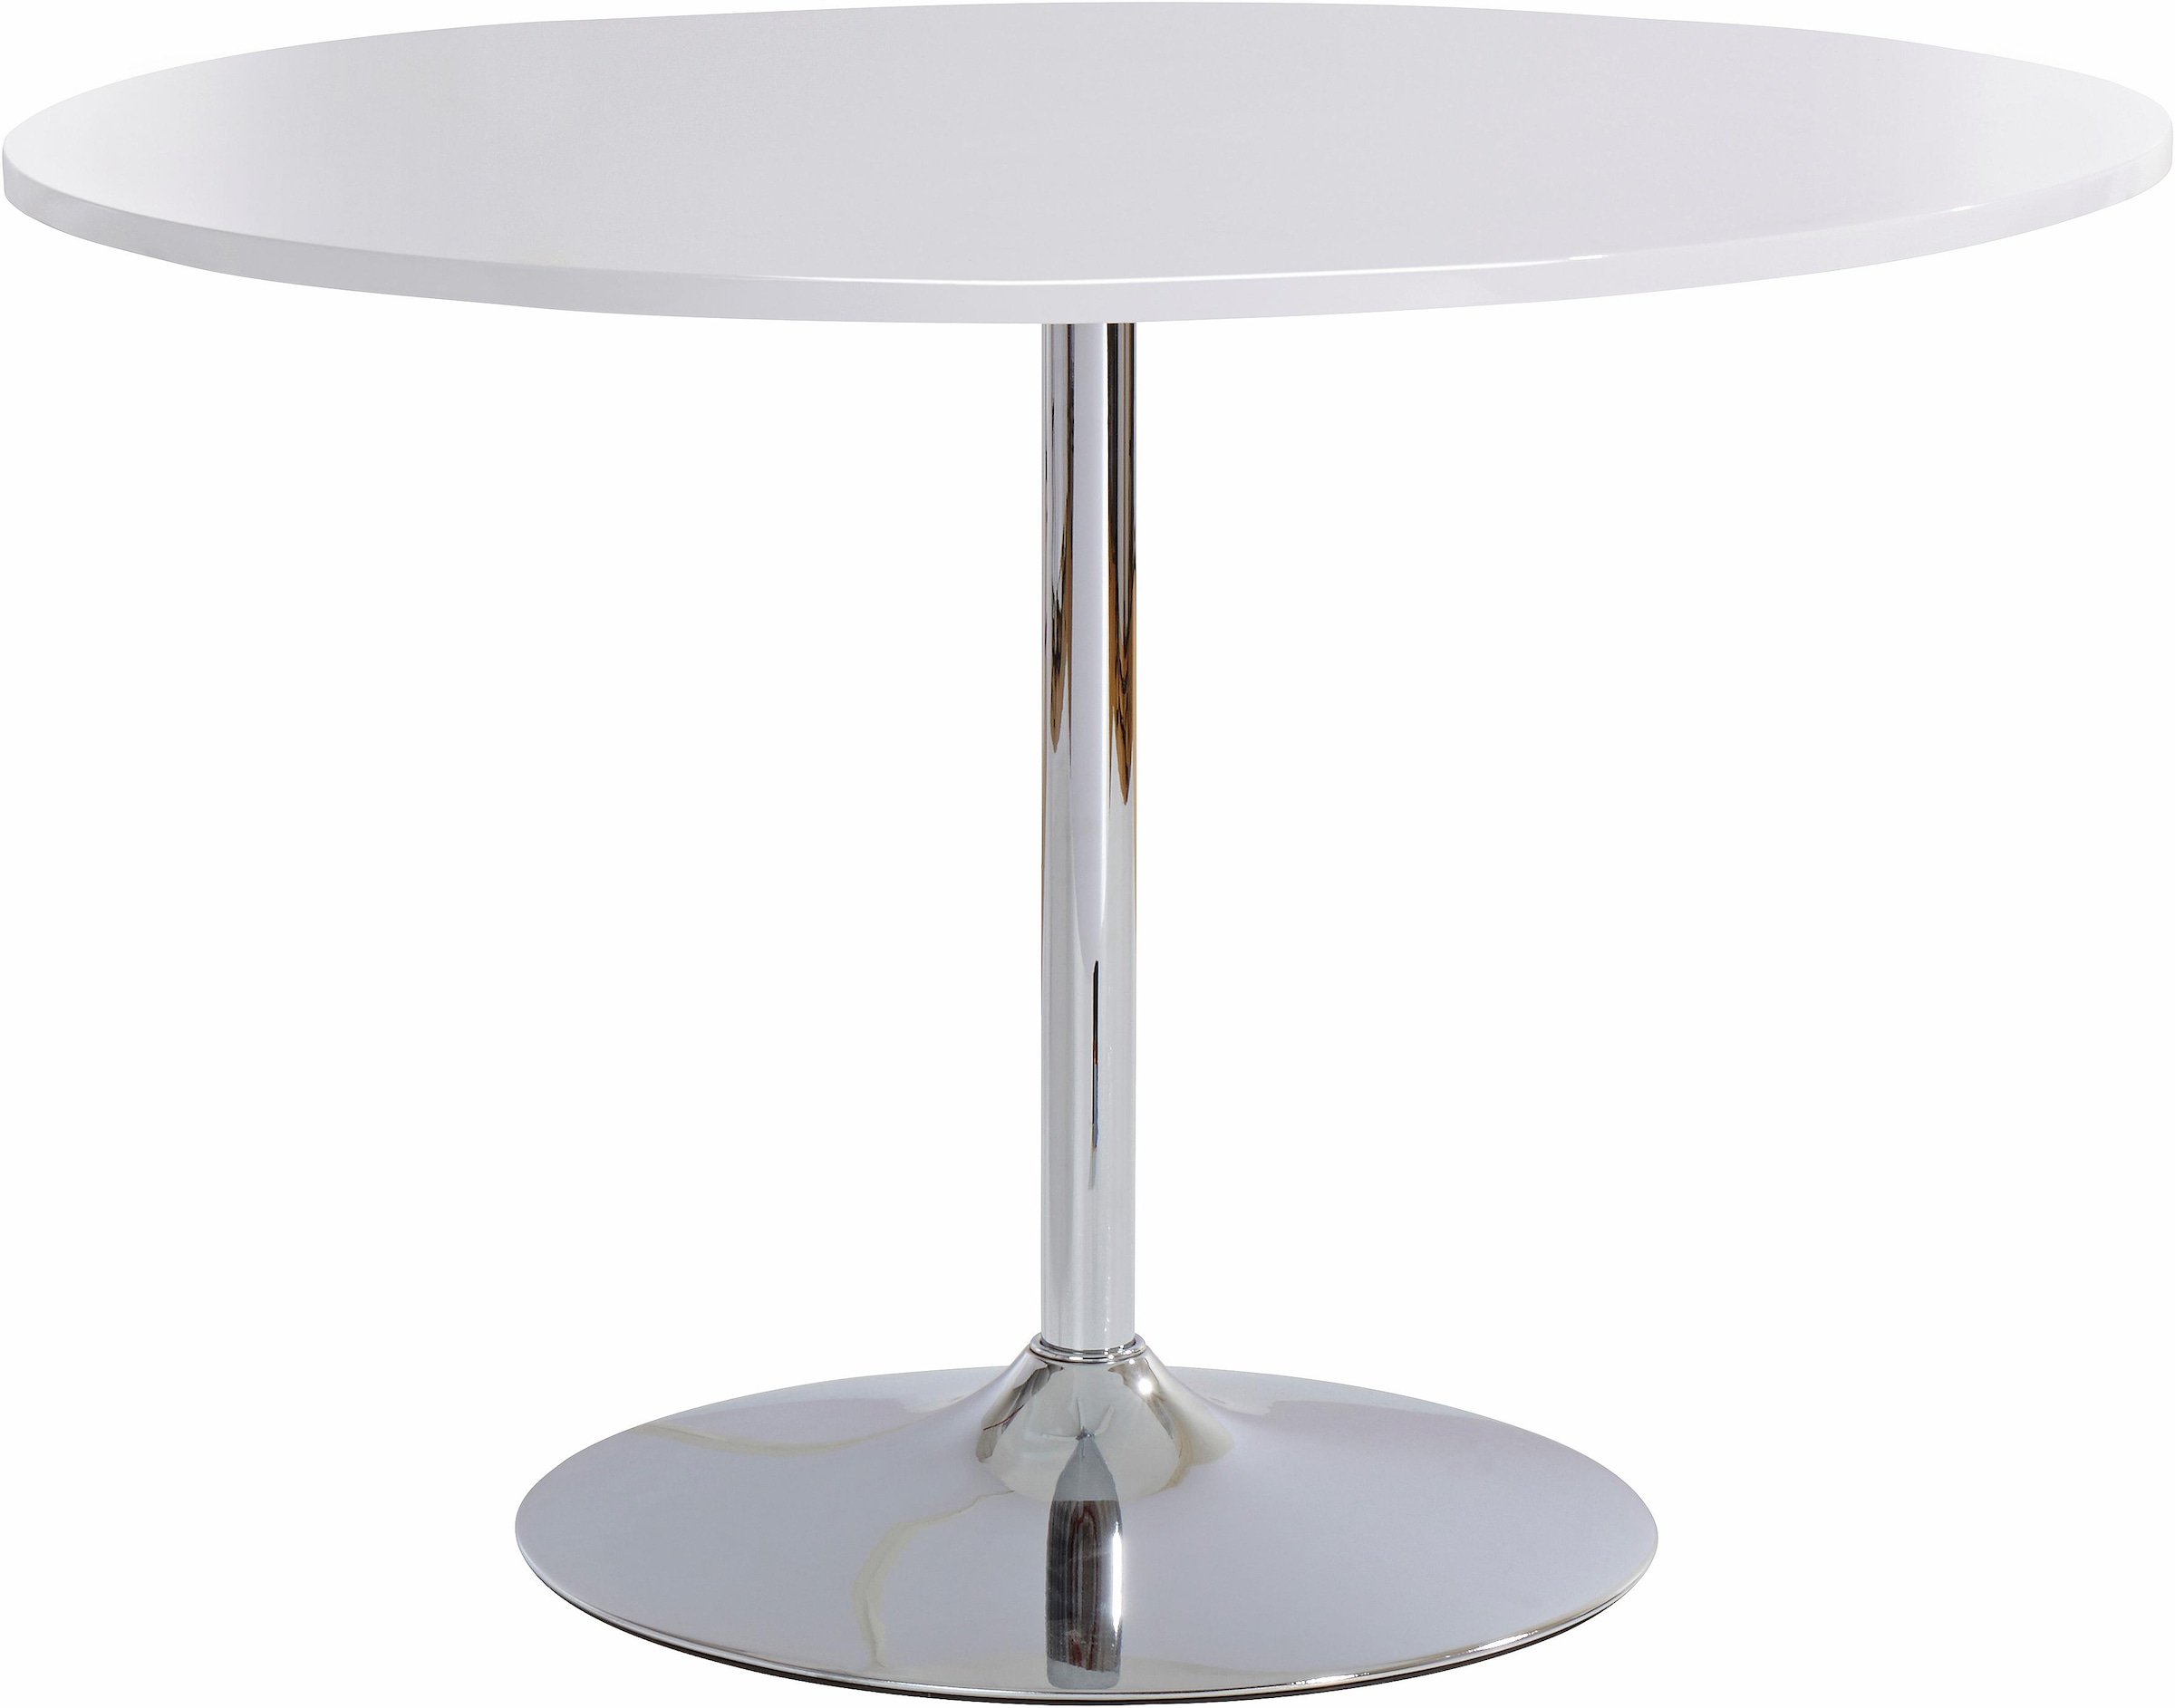 INOSIGN Esstisch »Trompet«, rund, Ø110 cm, Tischplatte weiß Hochglanz, Trompetenfuß, Tulpentisch